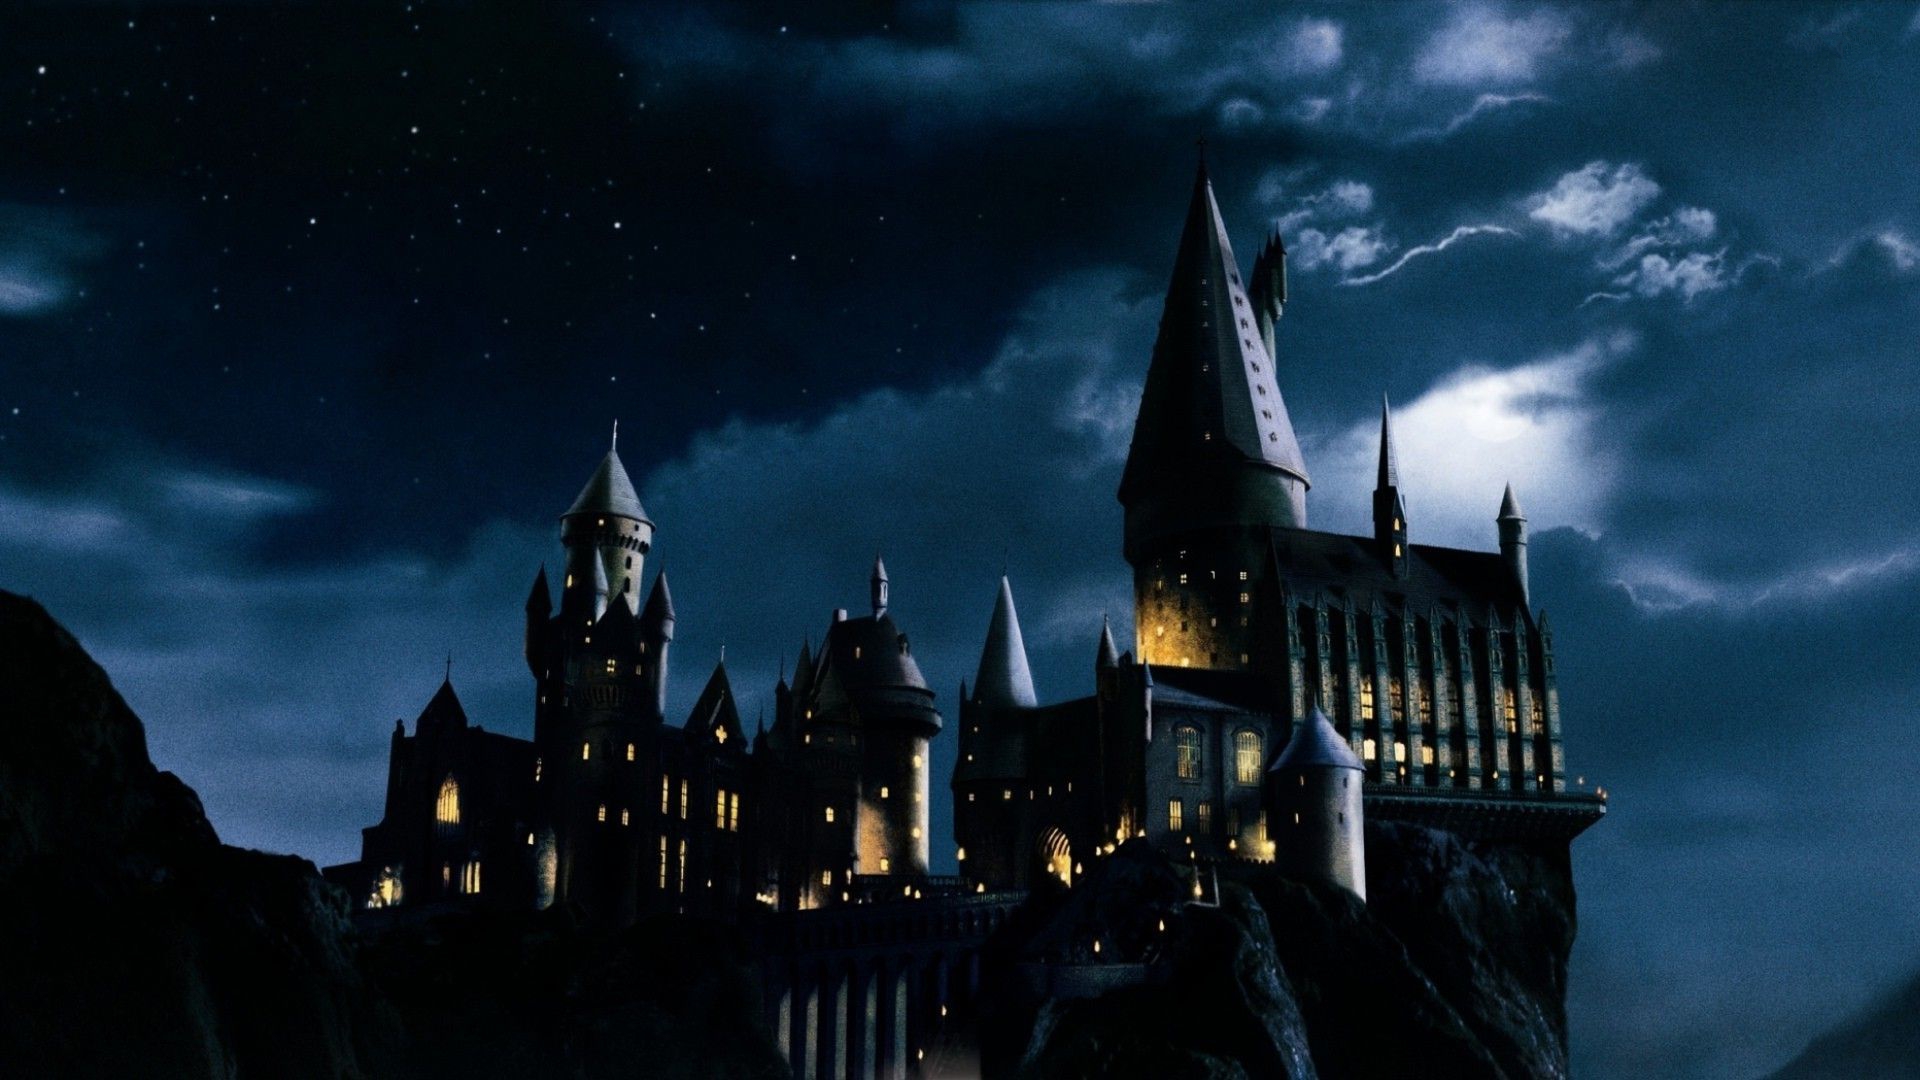 Free Download Hogwarts Castle Backgrounds | PixelsTalk.Net